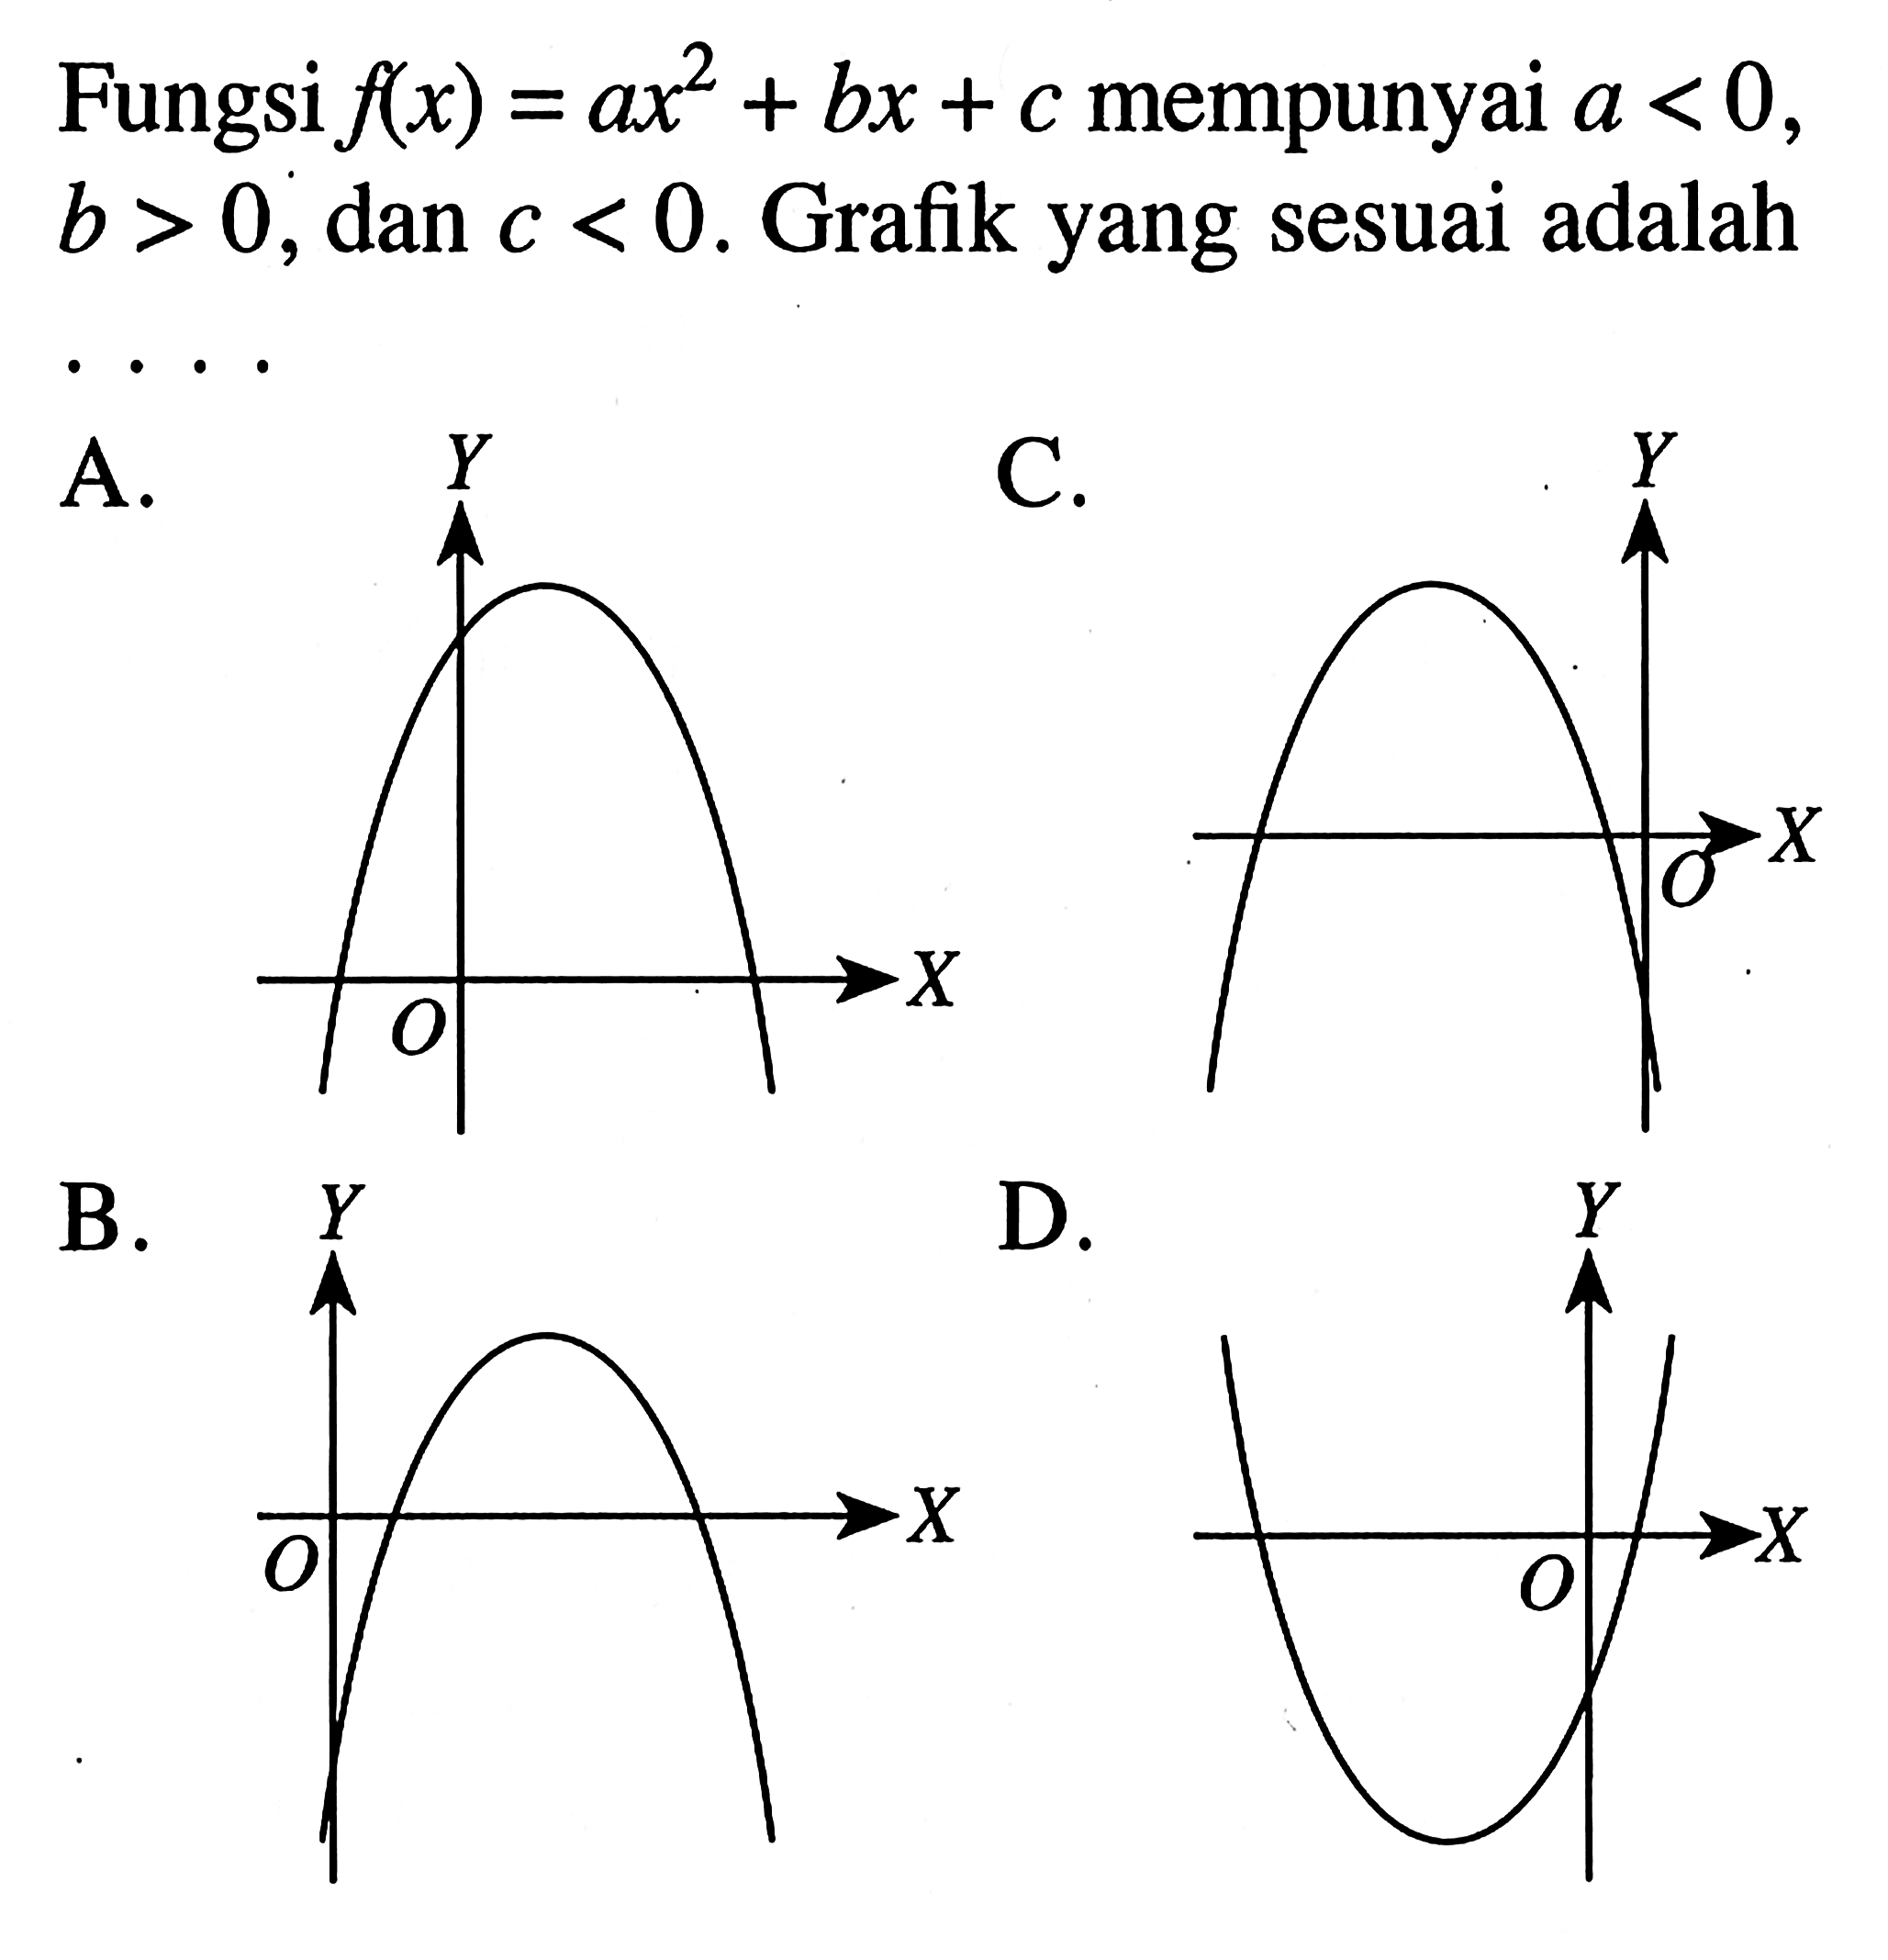 Fungsi fx) = ax^2 + bx + c mempunyai a < 0, ax2 b > 0, dan c < 0. Grafik yang sesuai adalah . . . .